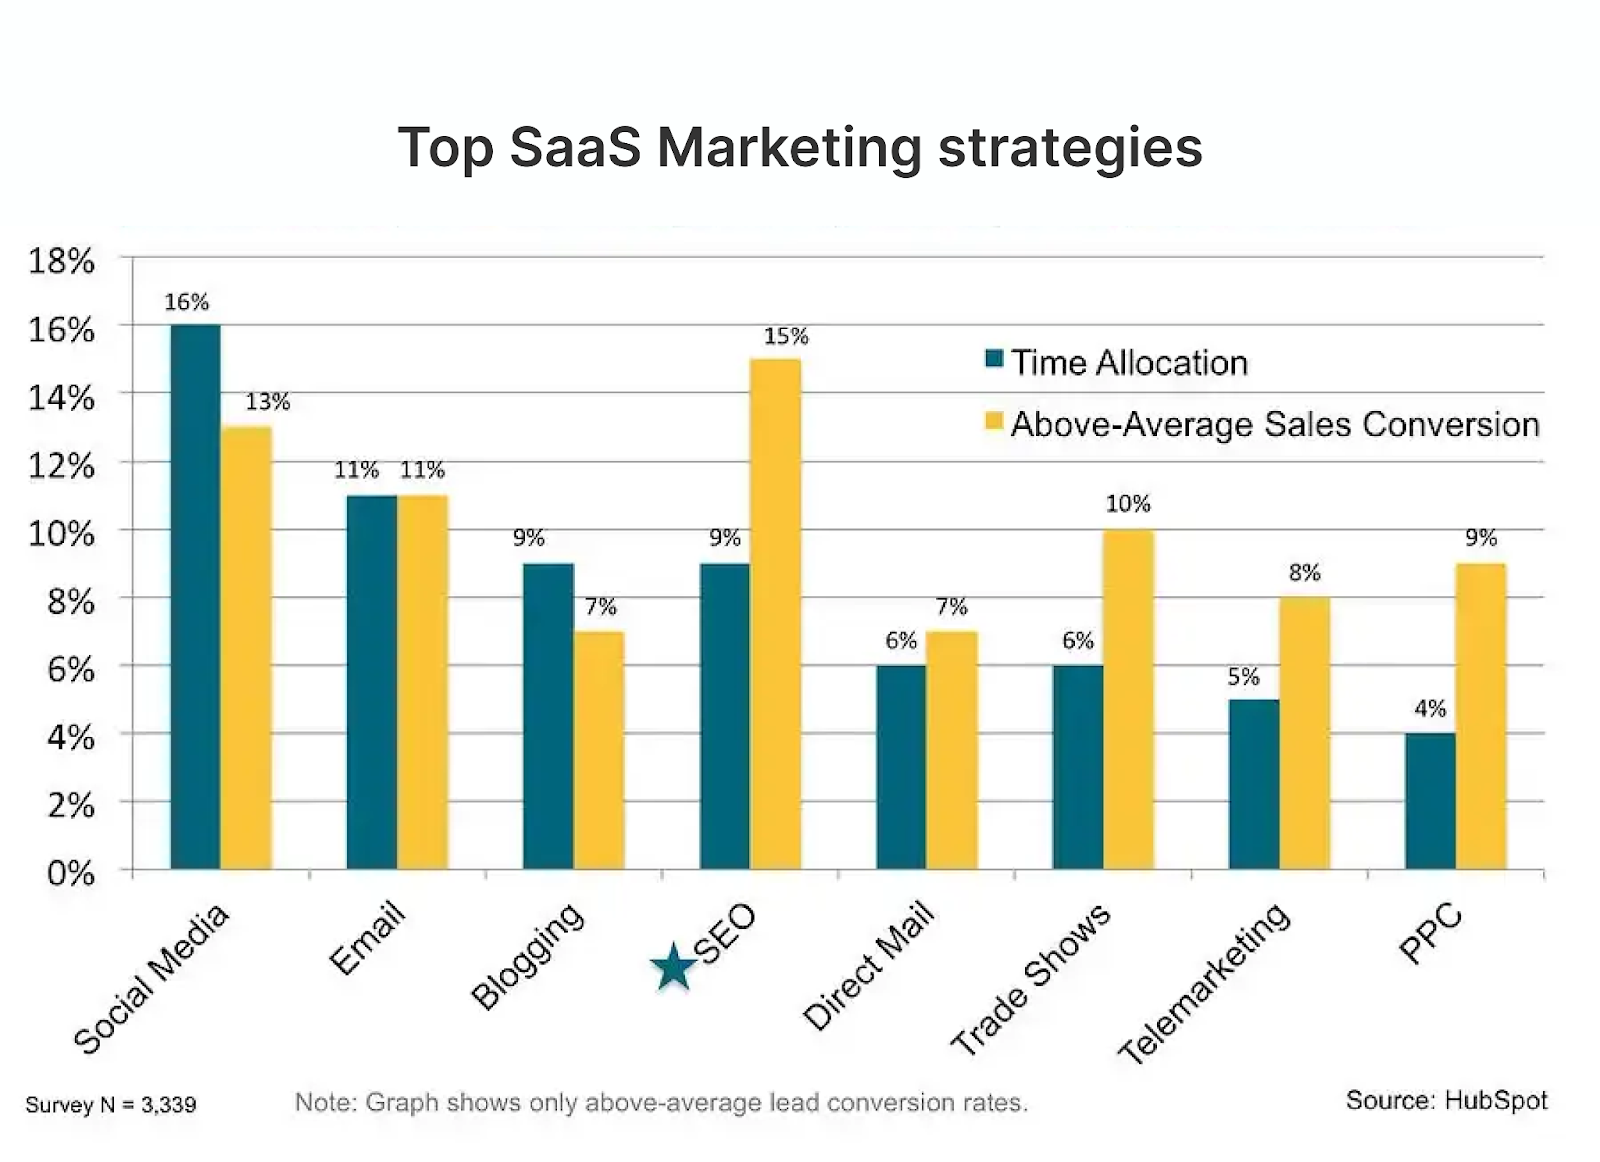 Top SaaS Marketing Strategies